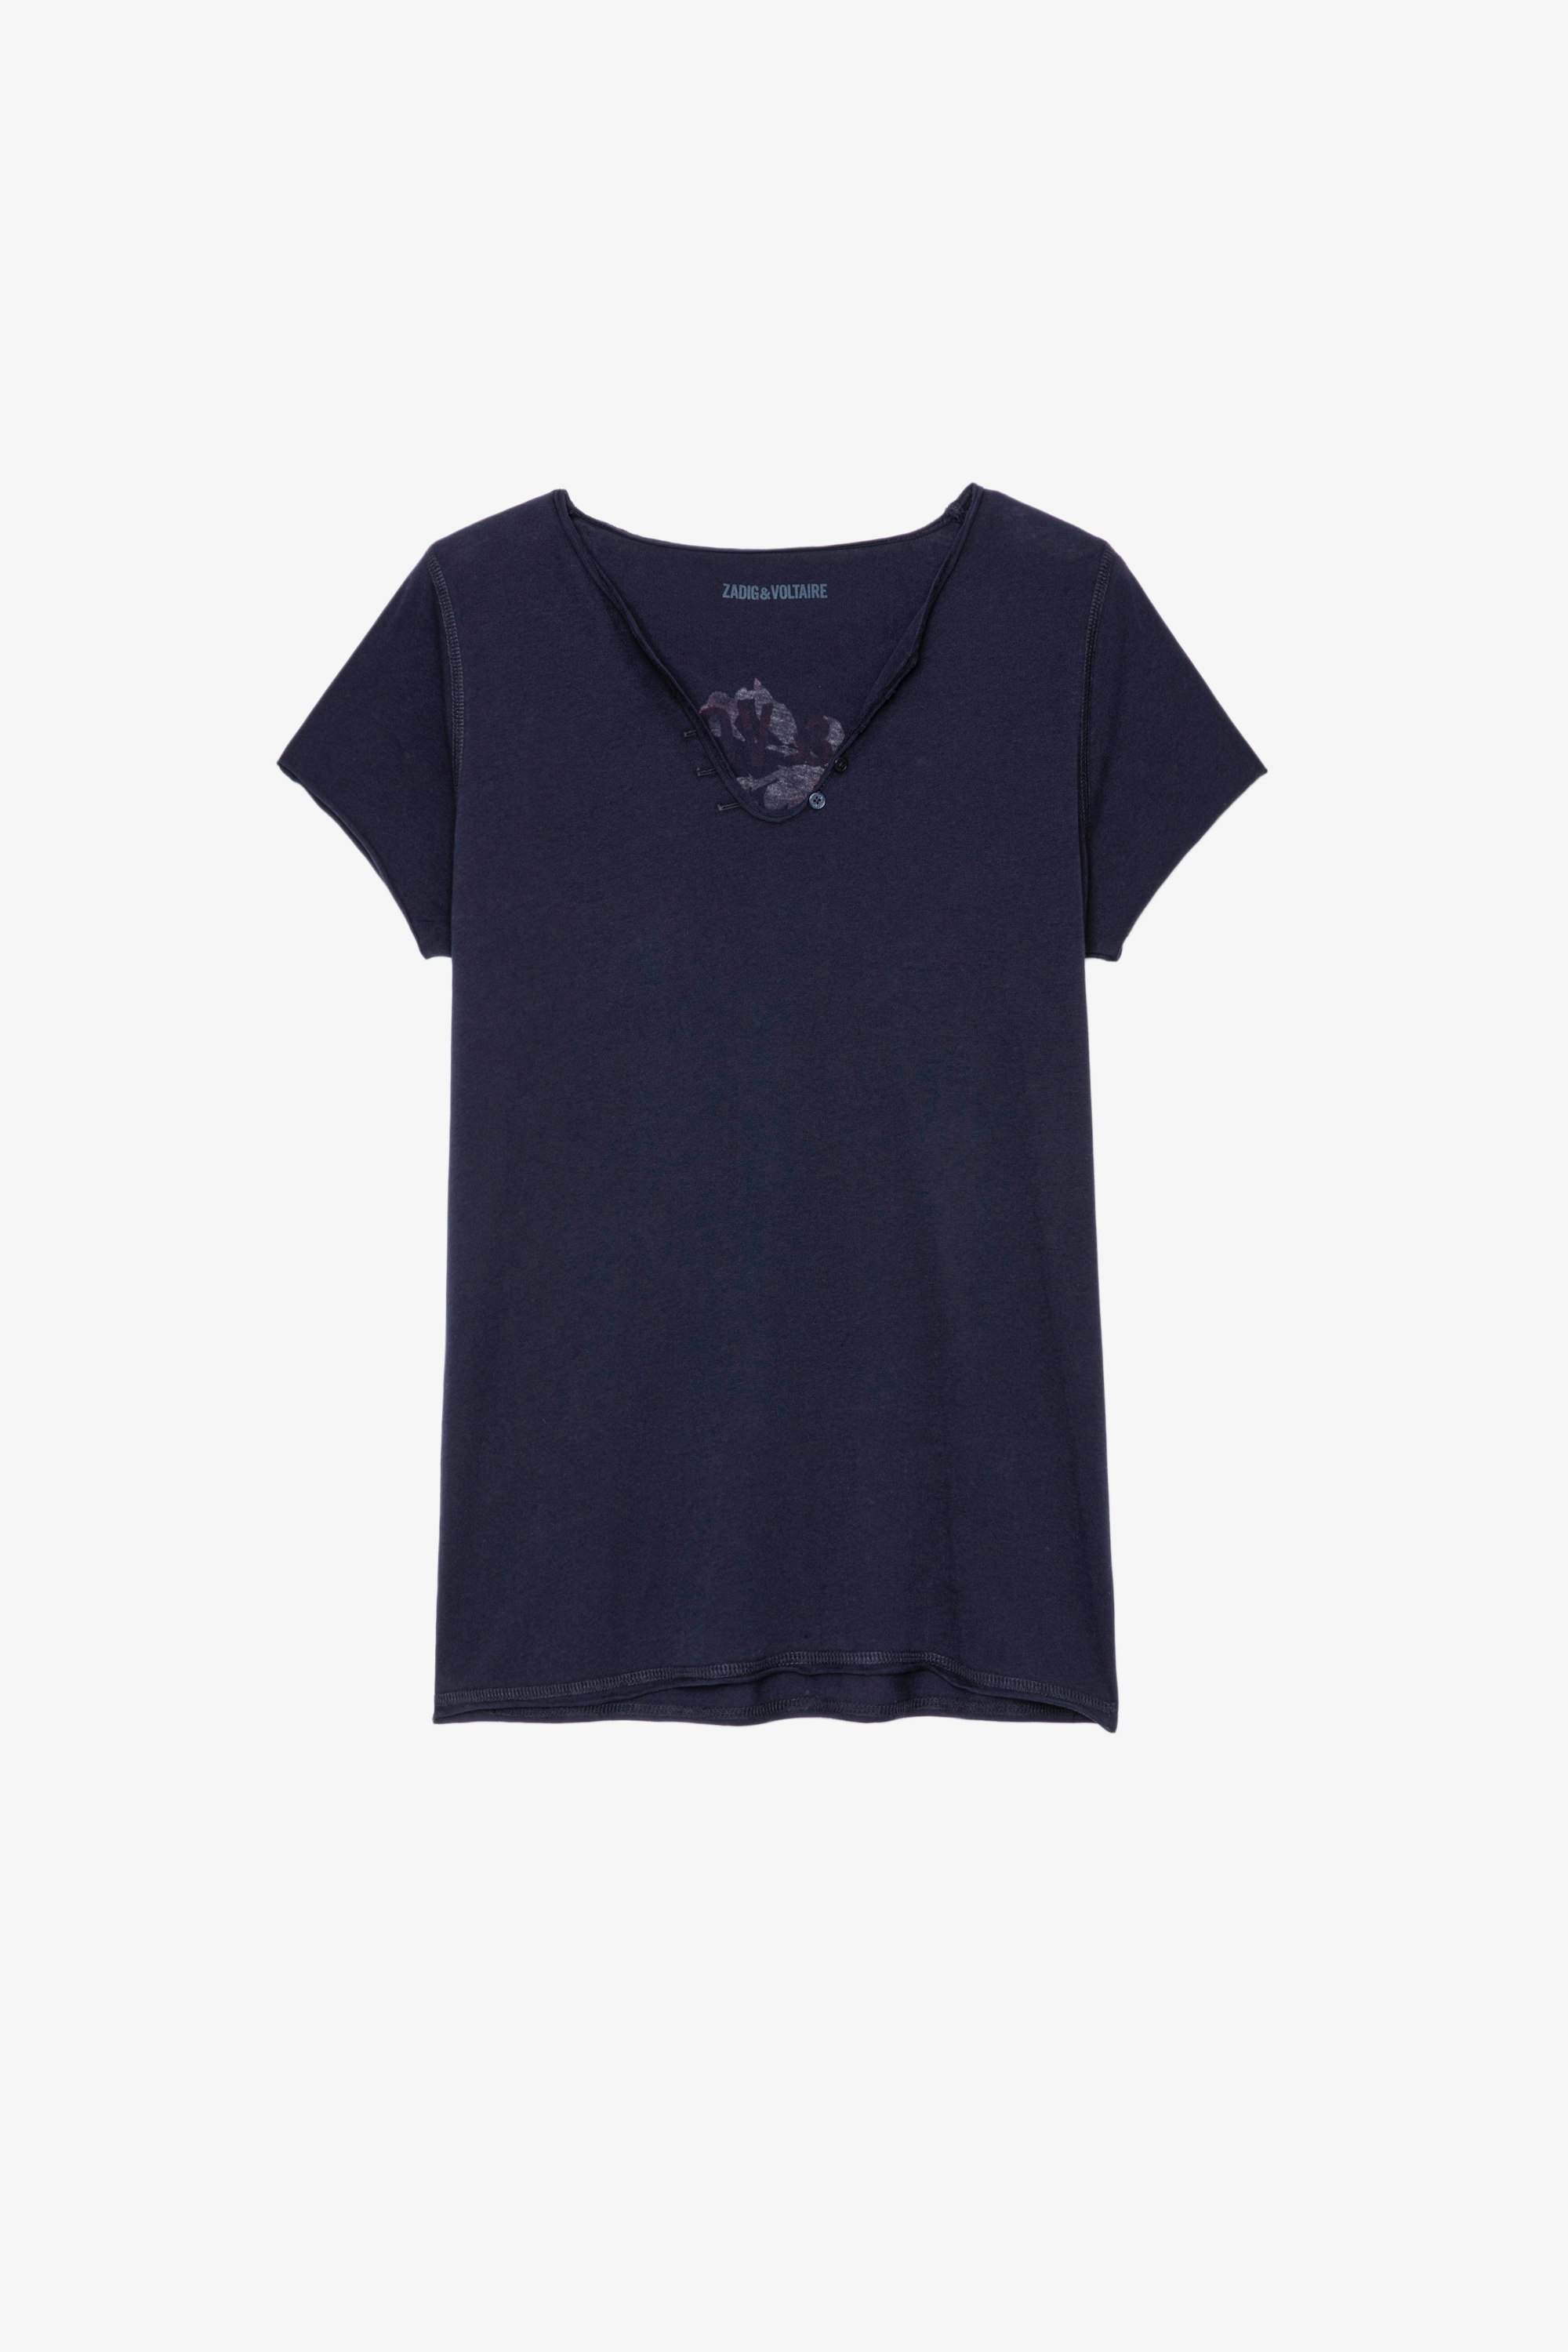 T-Shirt mit Henley-Ausschnitt Blason Damen-T-Shirt mit Henley-Ausschnitt aus marineblauer Baumwolle und mit dem Wappen und Kristallen auf dem Rücken